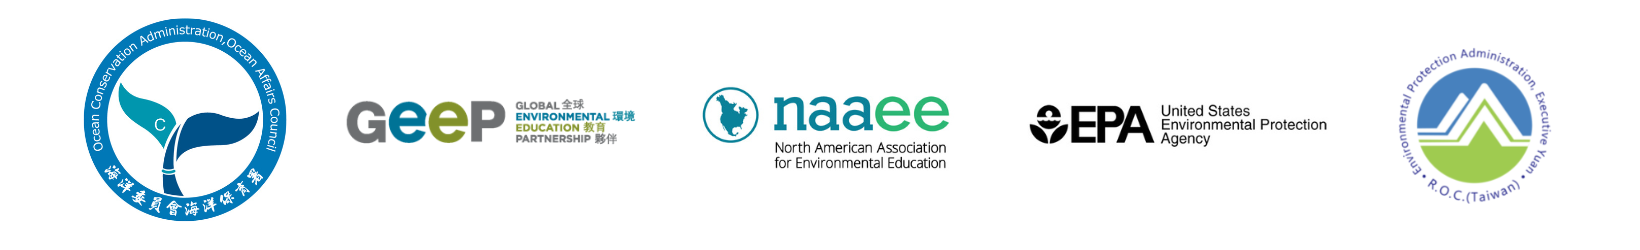 OCA, GEEP, NAAEE, US EPA, and EPA Taiwan logos